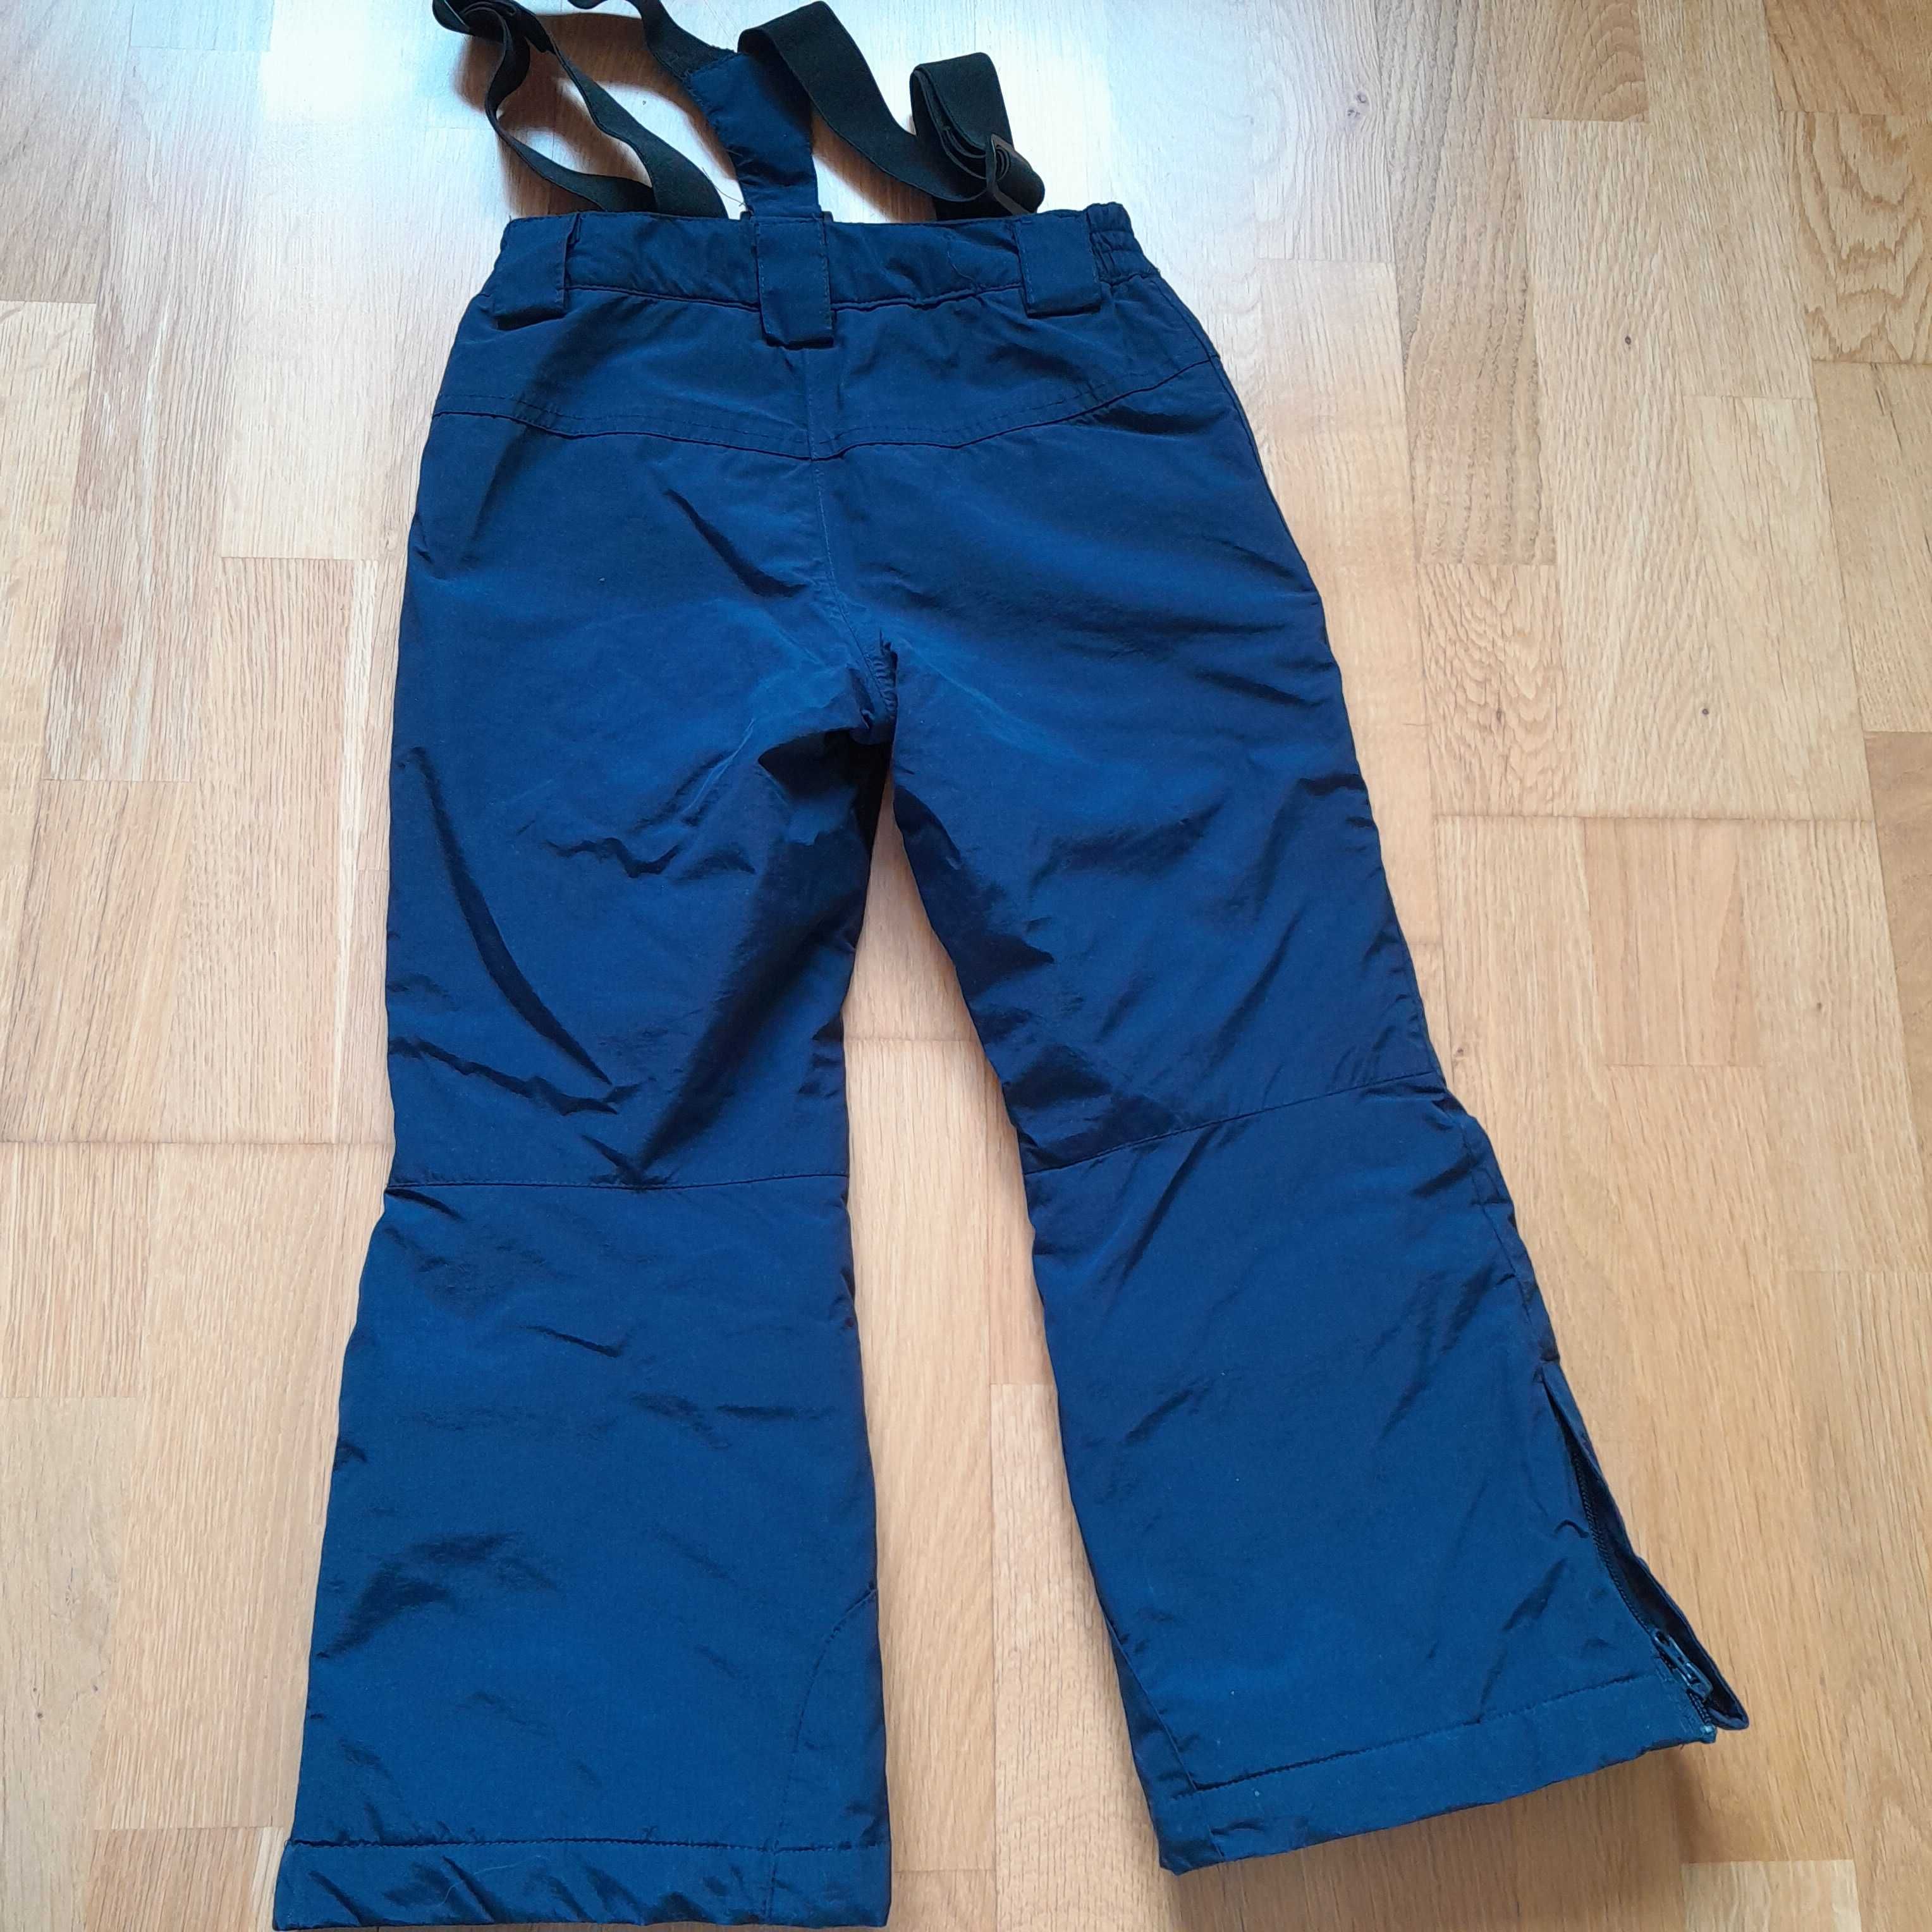 Spodnie narciarskie firmy Mc kinley , rozmiar 116